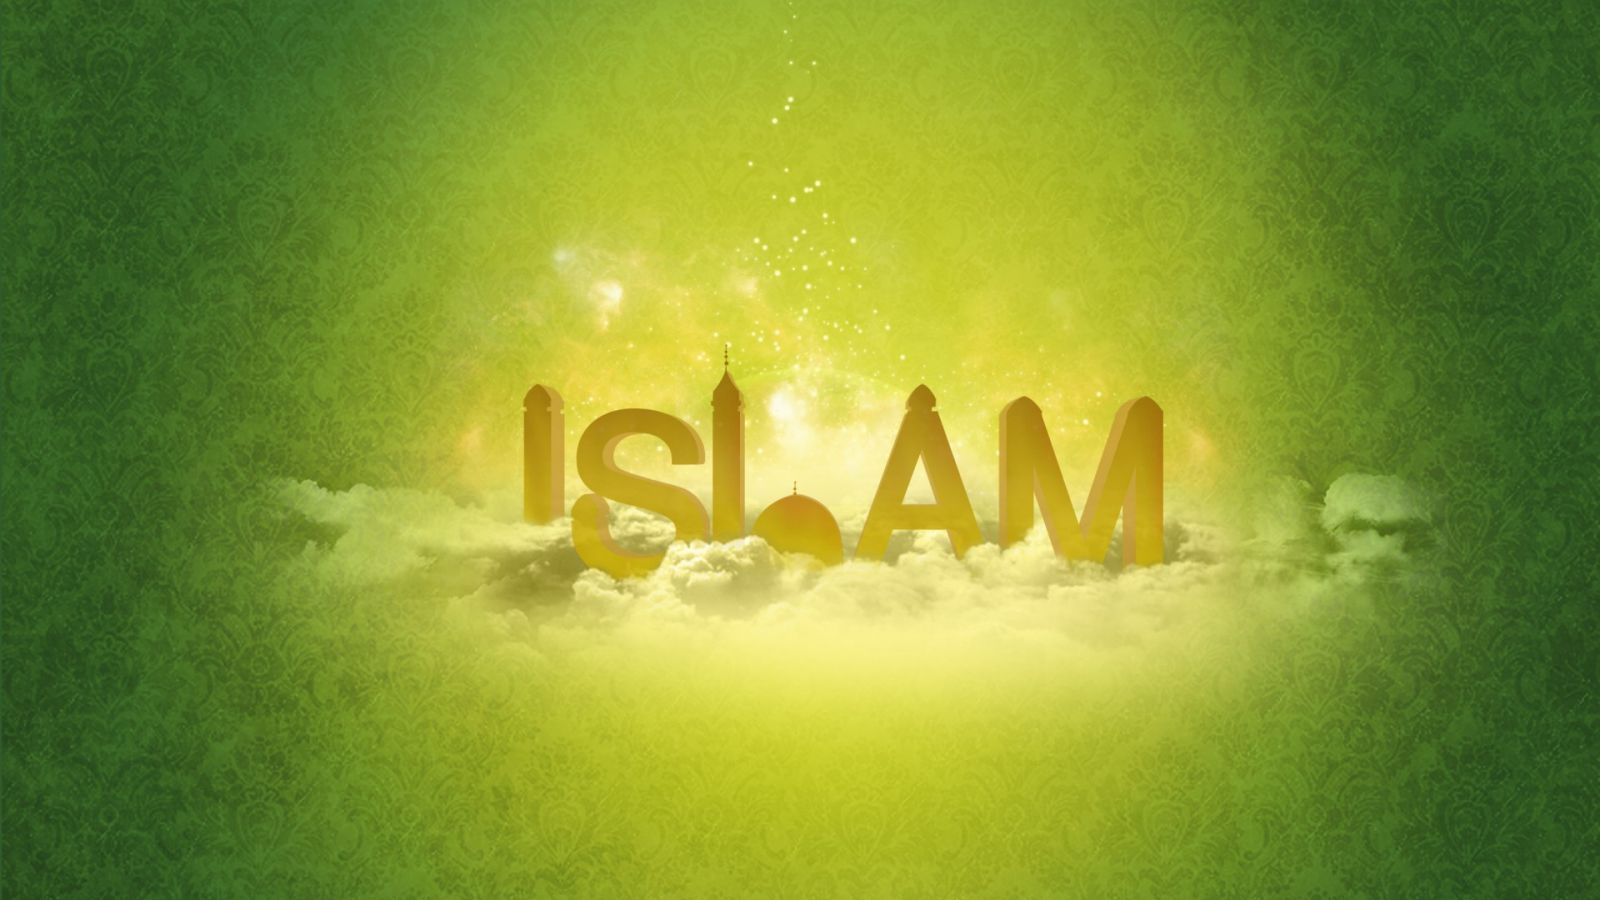 Islam-Green-Vector-Art-Wallpaper-1600x900